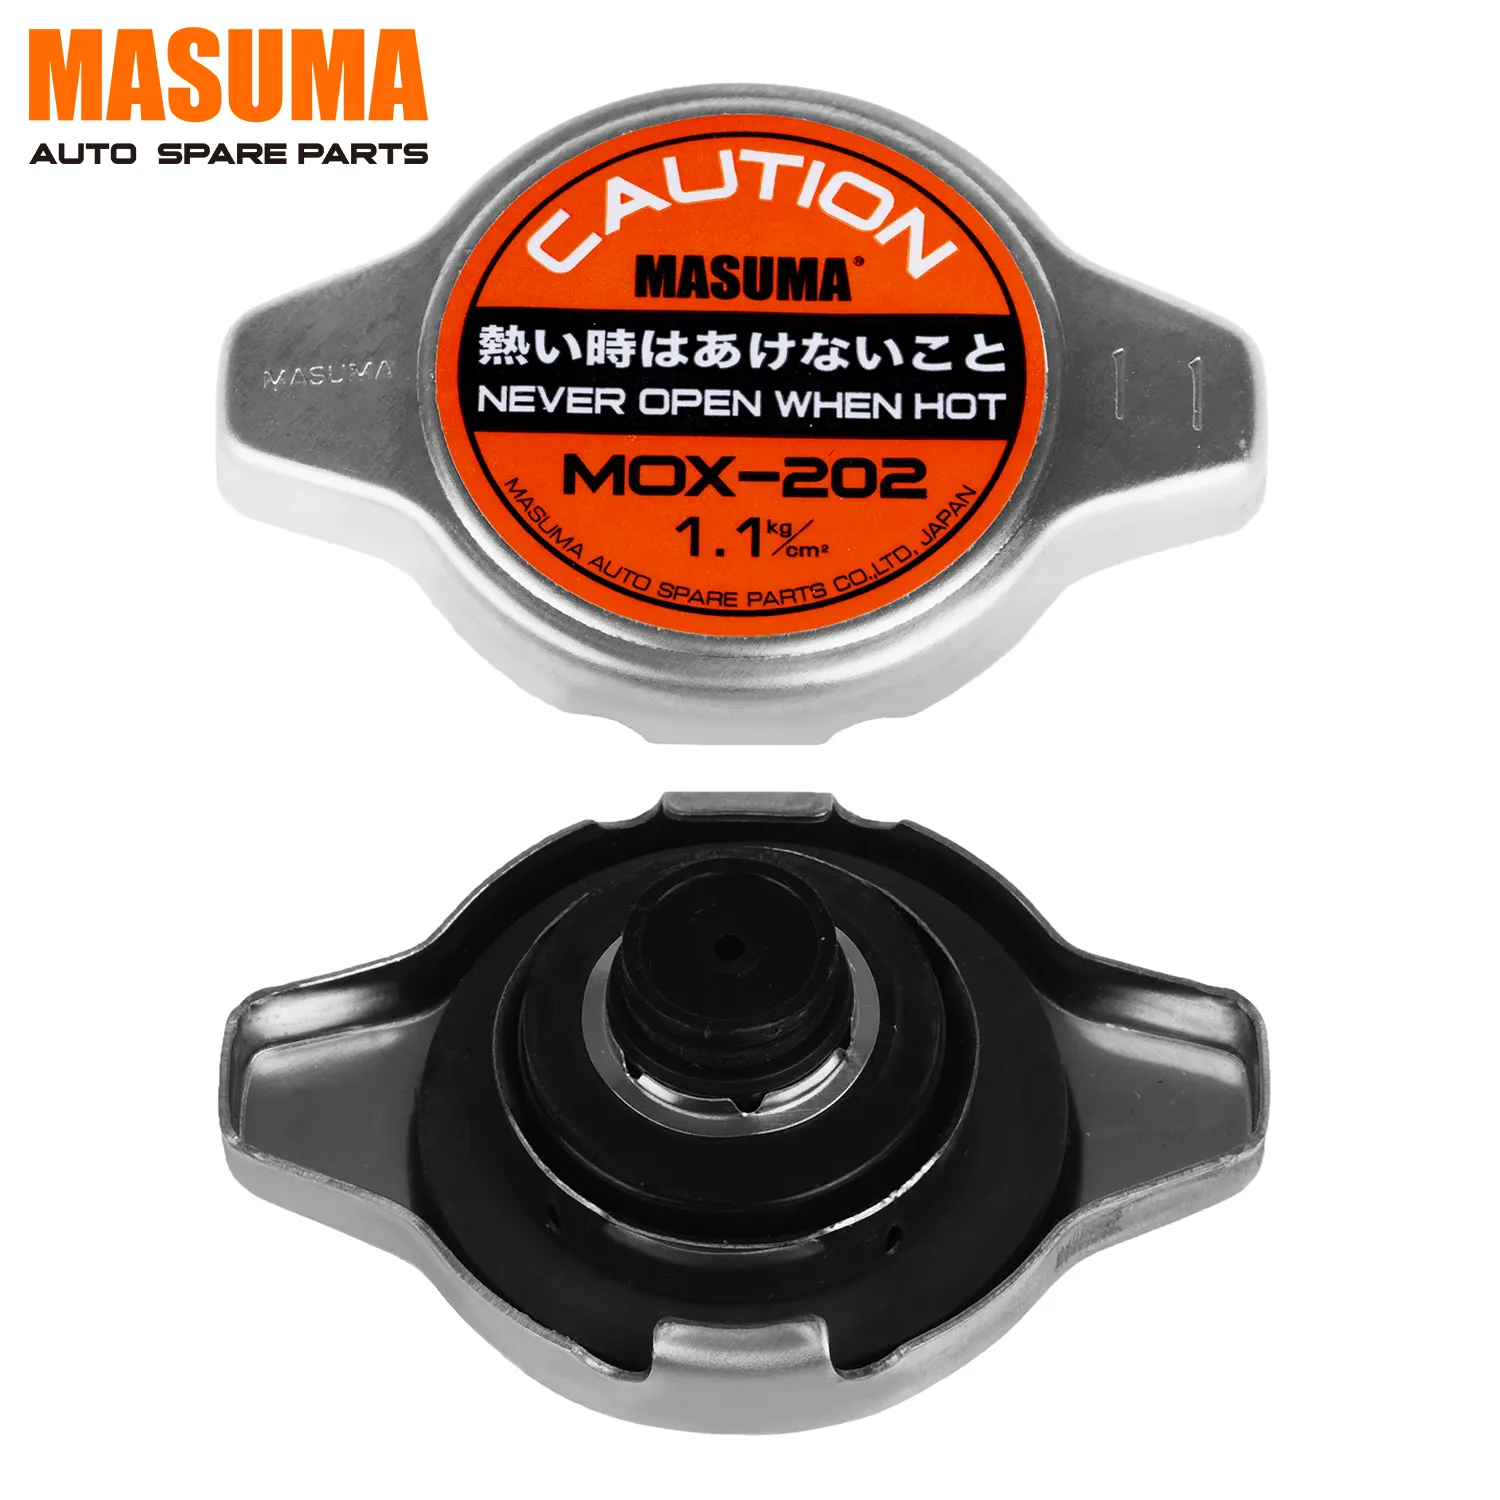 MOX-202 MASUMA presión universal radiador 16401-28120, 16401-28280, 16401-28430, 16401-31480